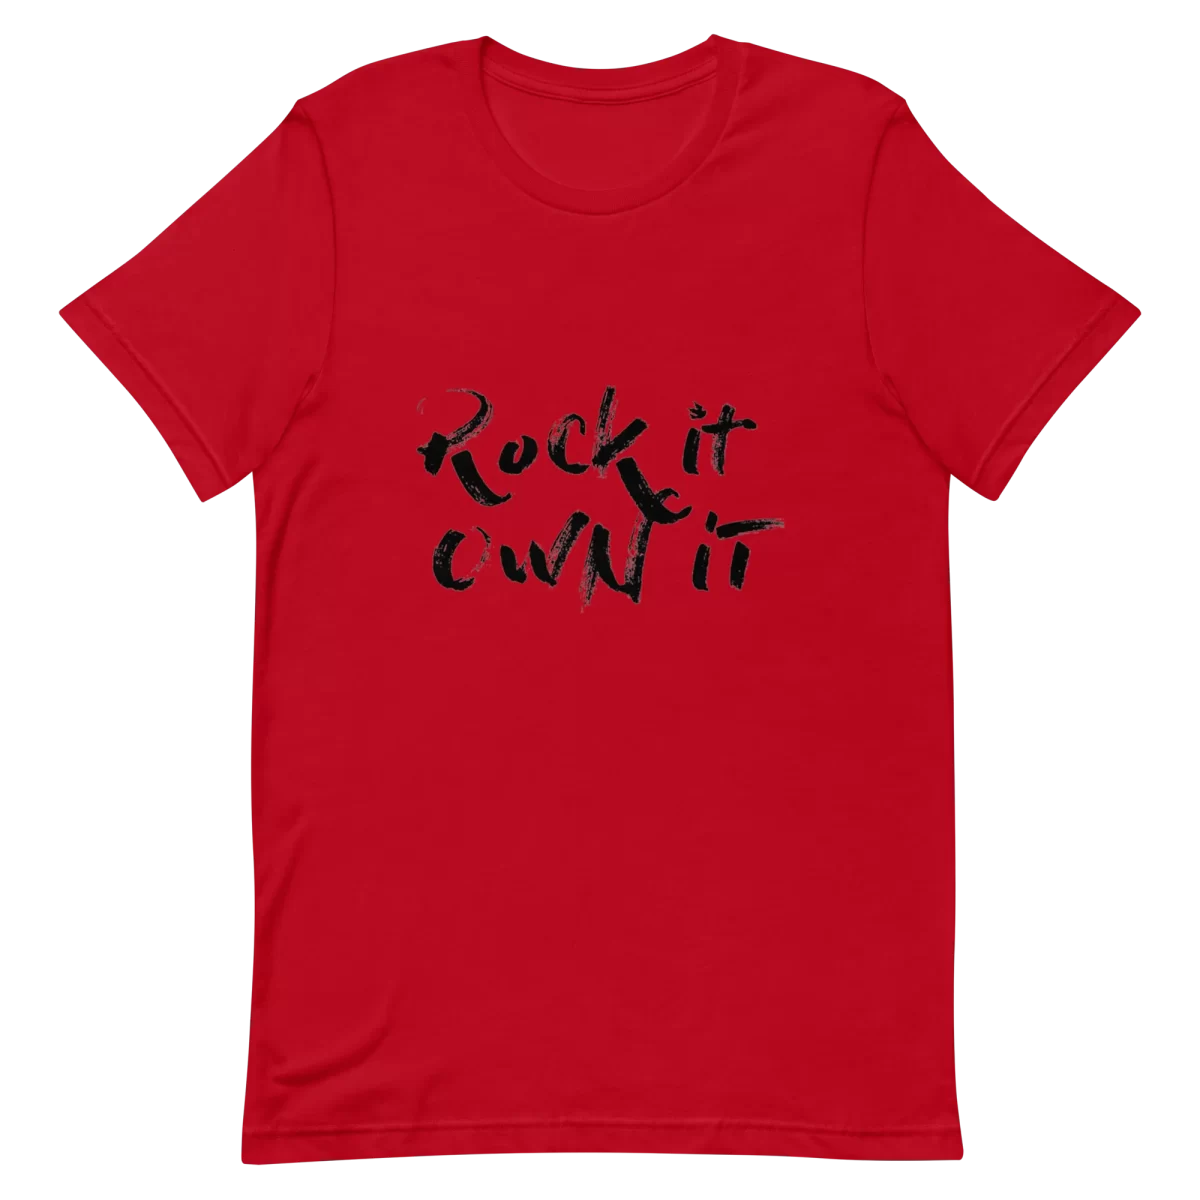 Red Unisex T-Shirt - Rock it Own it